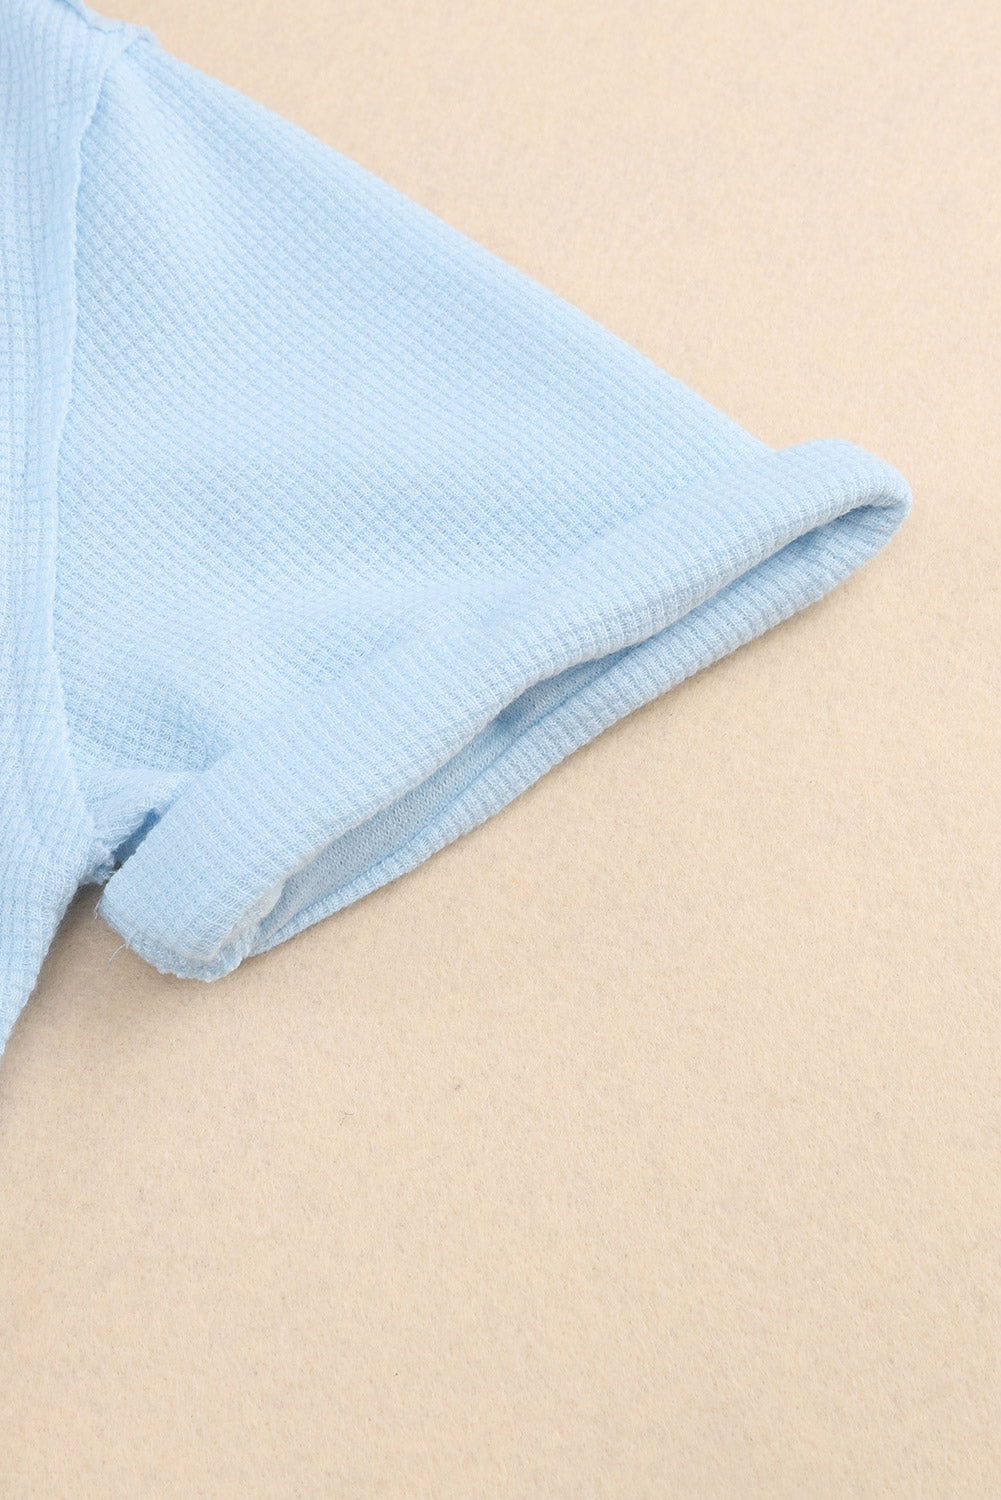 Camicia a maniche corte con bottoni in maglia waffle con lavaggio acido azzurro cielo